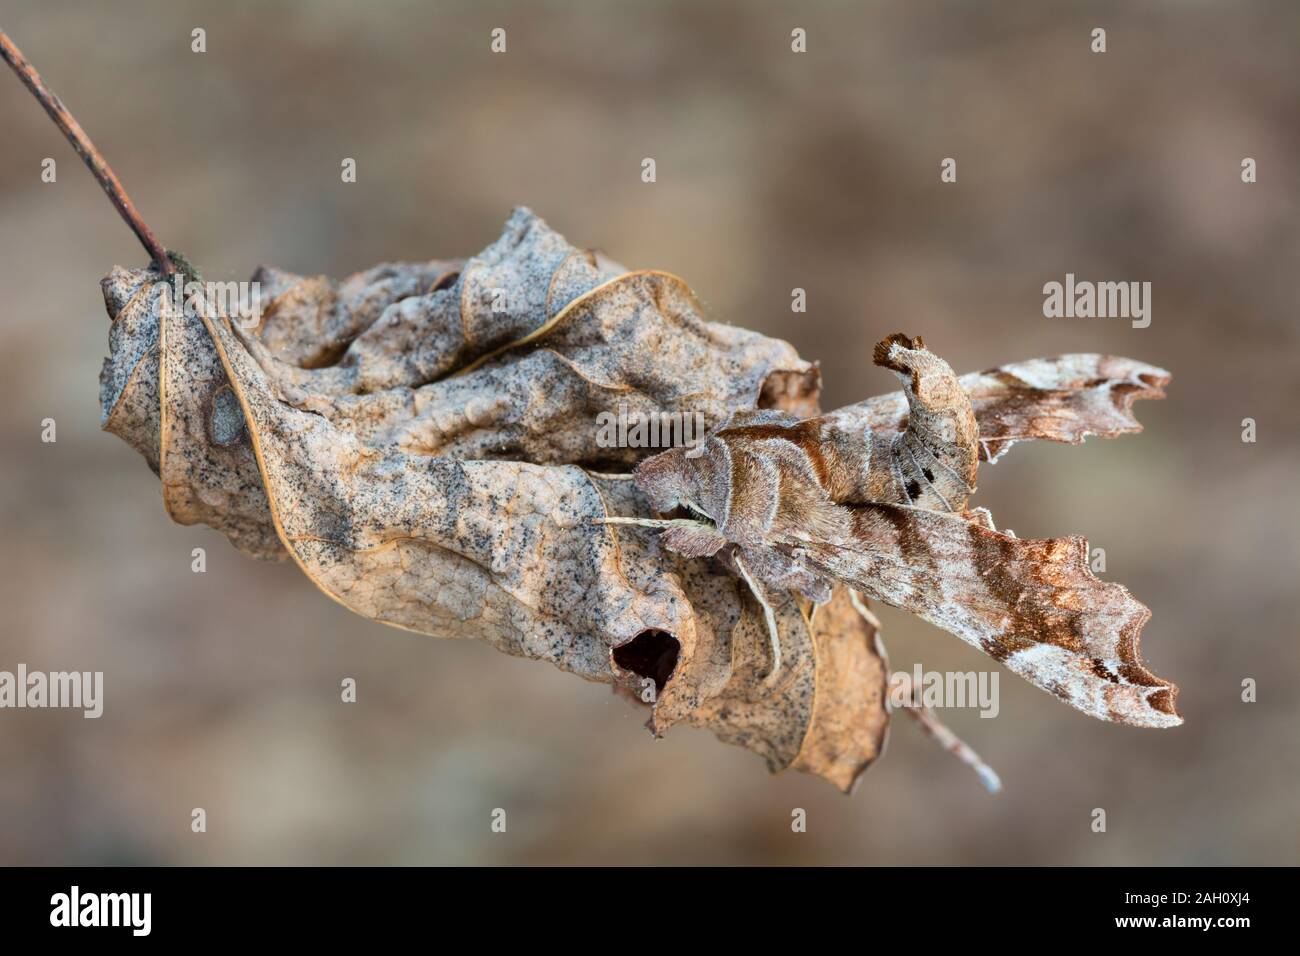 (Deidamia inscriptum beschriftete Sphinx) Erwachsenen Motten anzeigen cyrpsis sitzend auf toten Blattes. Congaree National Park, South Carolina, Frühling. Stockfoto